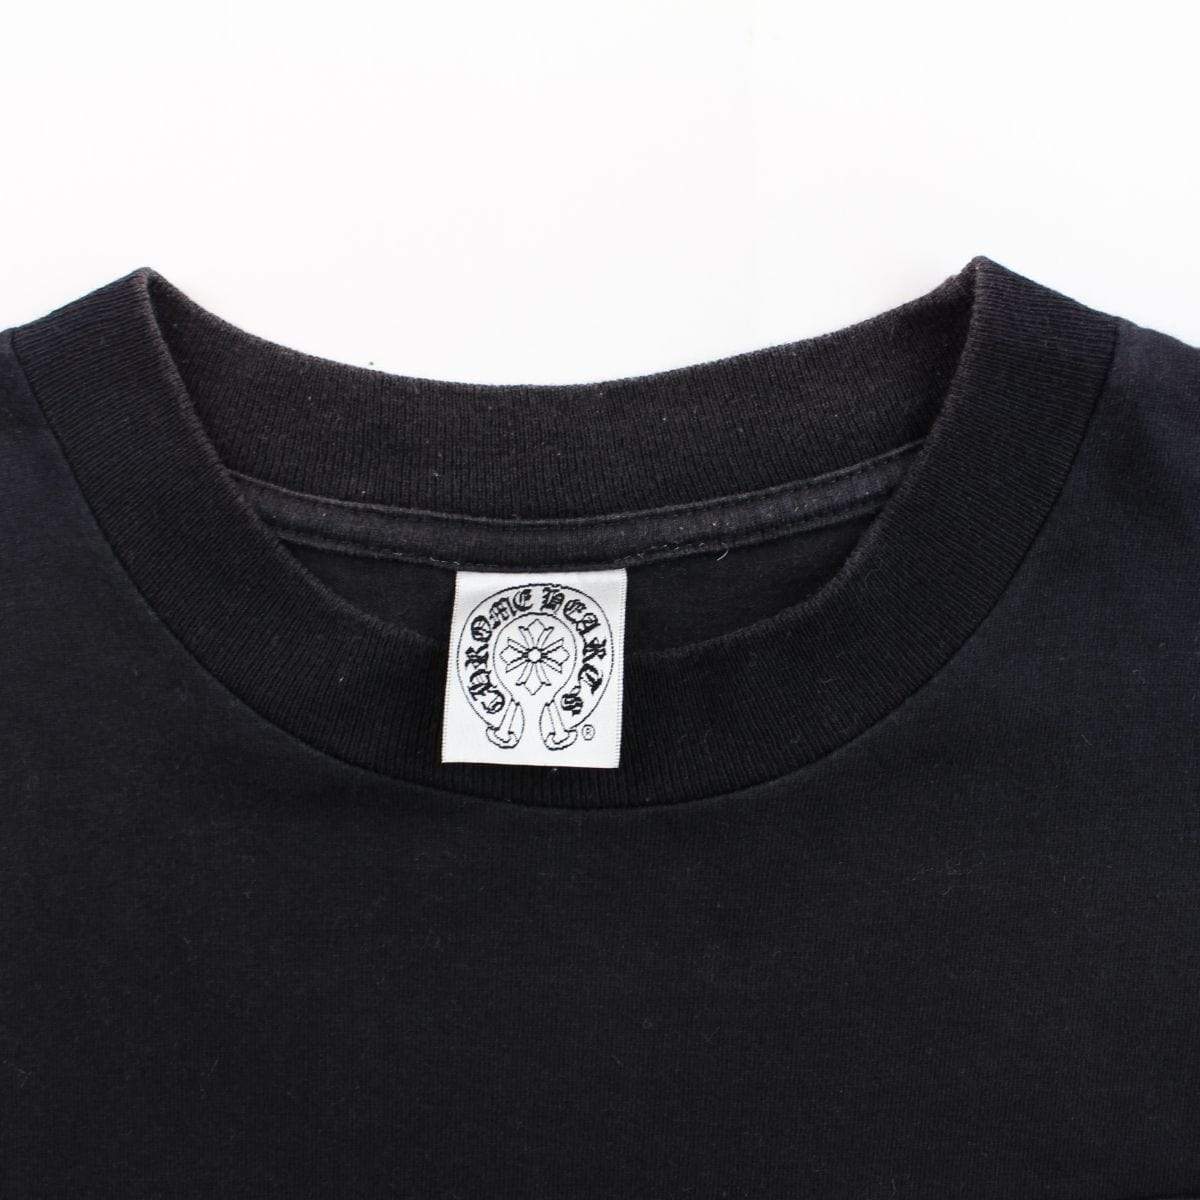 chrome hearts side & pocket logo tee black - SaruGeneral